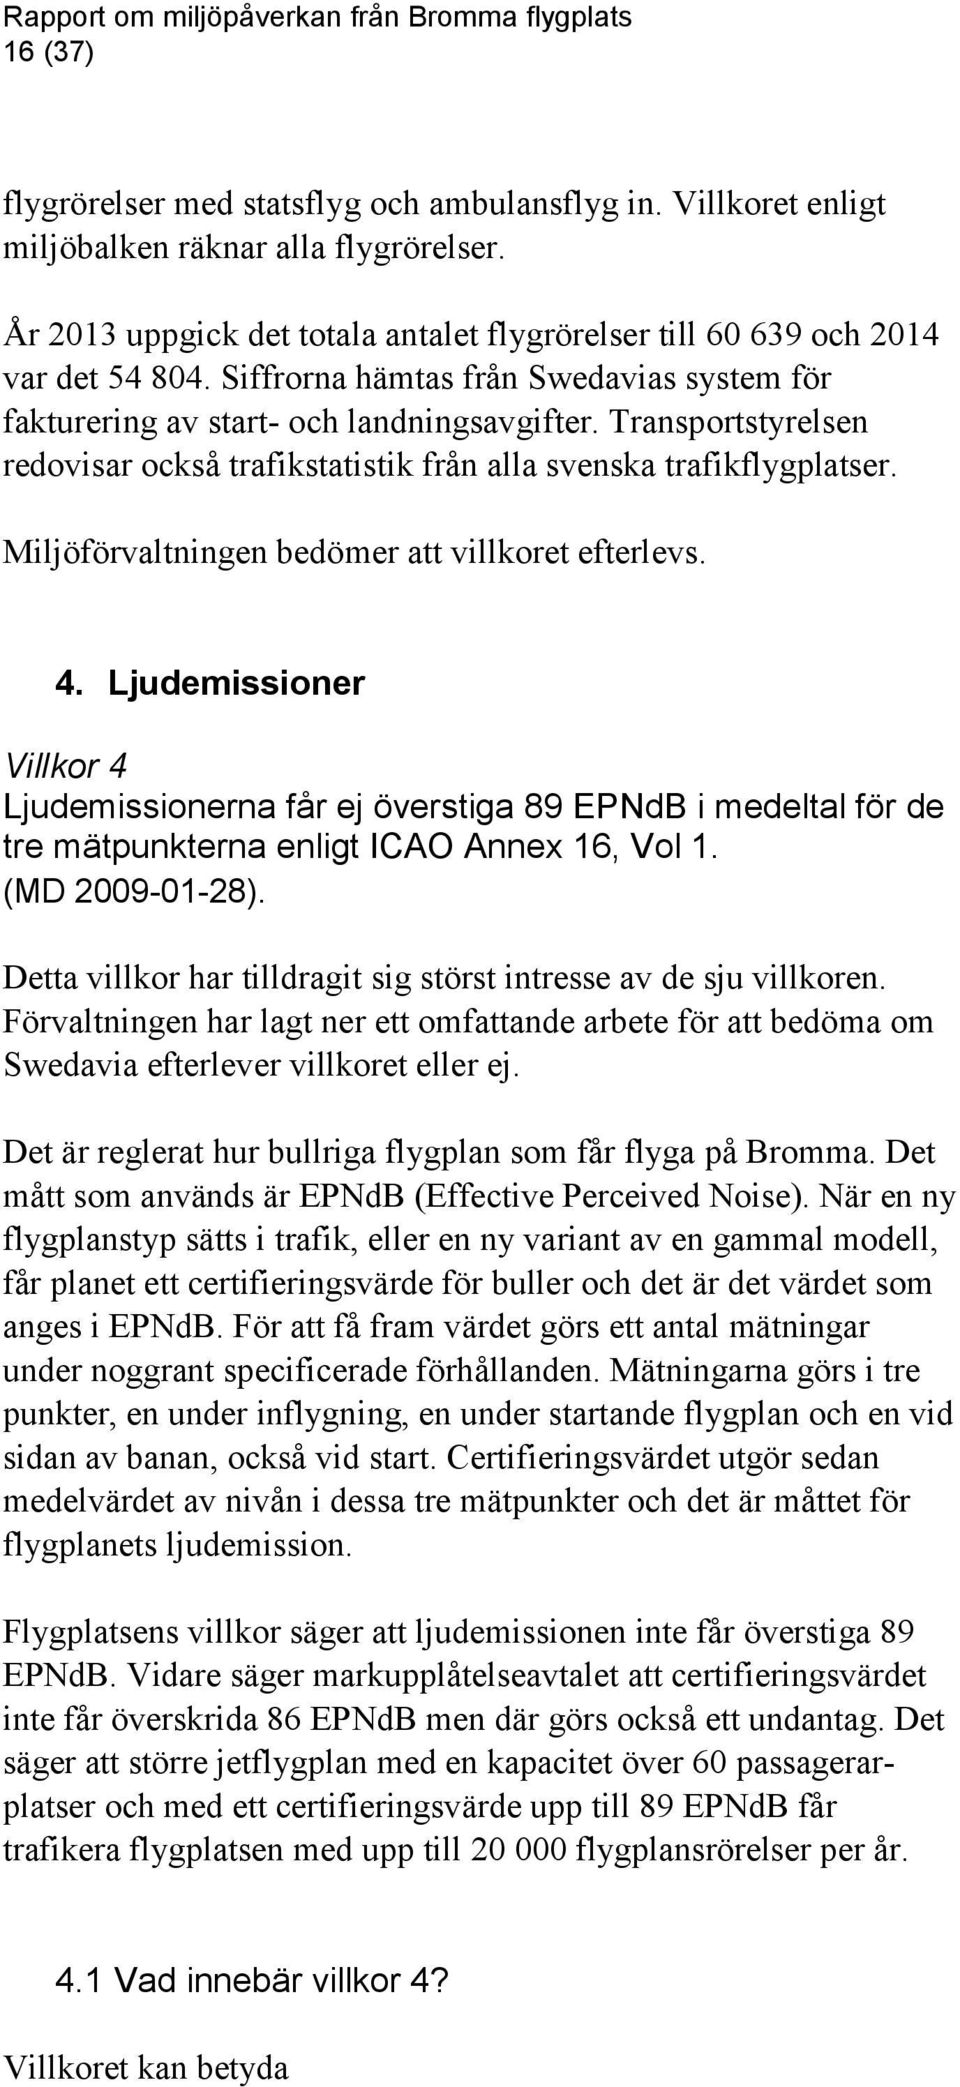 Miljöförvaltningen bedömer att villkoret efterlevs. 4. Ljudemissioner Villkor 4 Ljudemissionerna får ej överstiga 89 EPNdB i medeltal för de tre mätpunkterna enligt ICAO Annex 16, Vol 1.